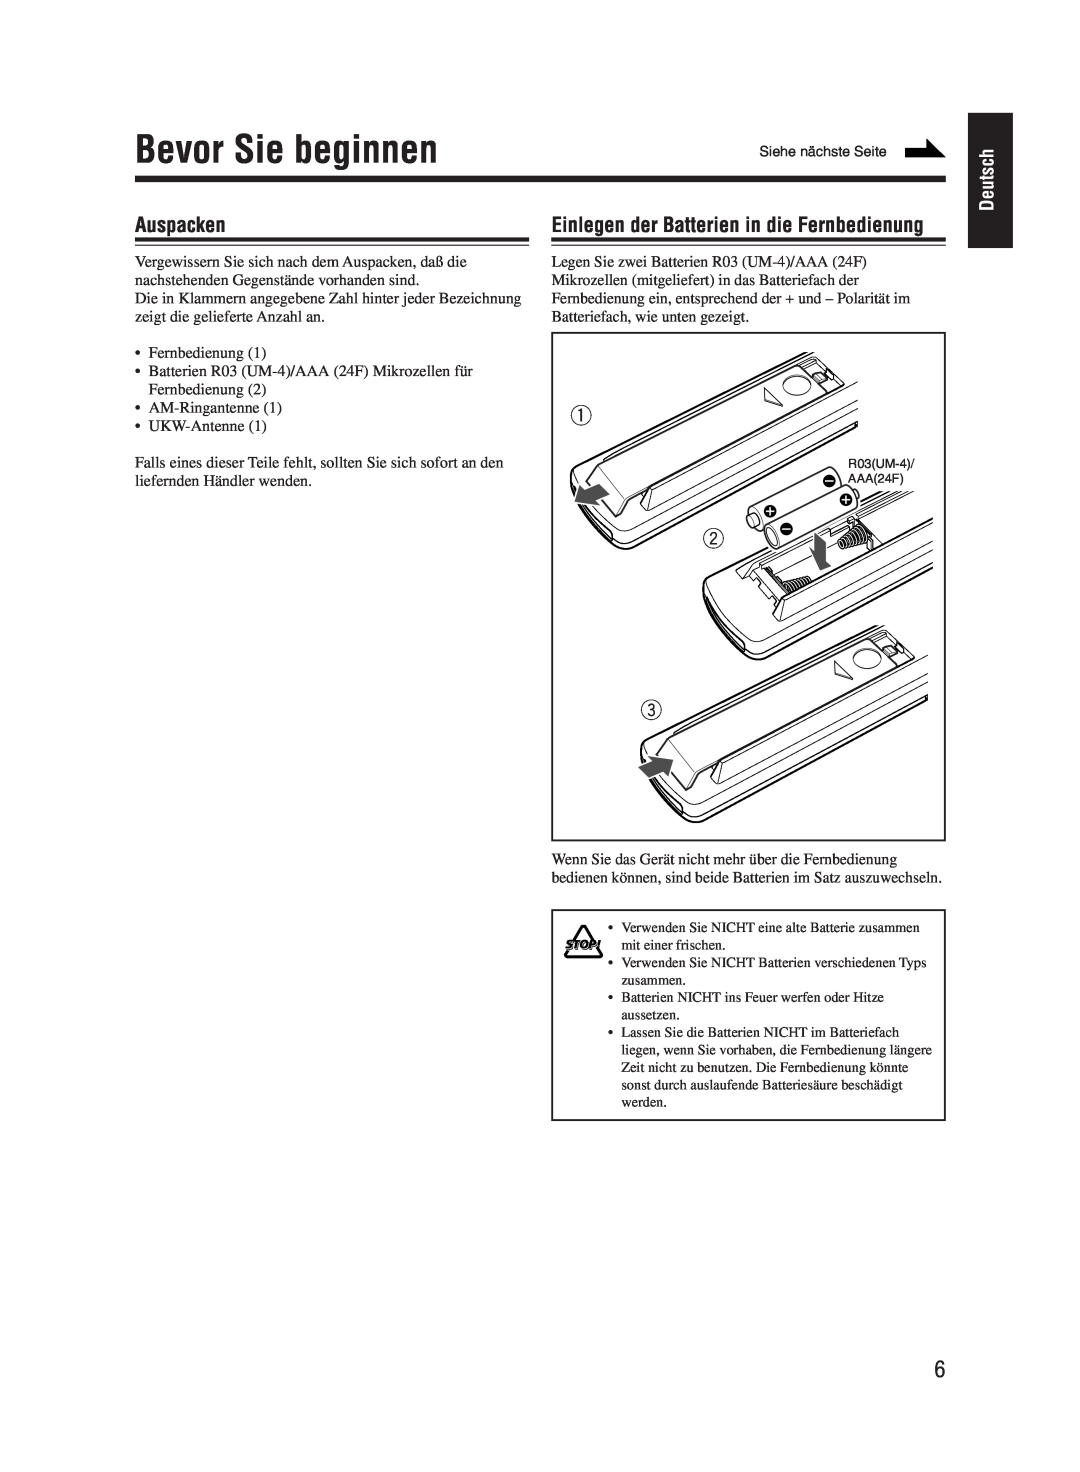 JVC UX-M55 manual Bevor Sie beginnen, Auspacken, Einlegen der Batterien in die Fernbedienung, Deutsch 